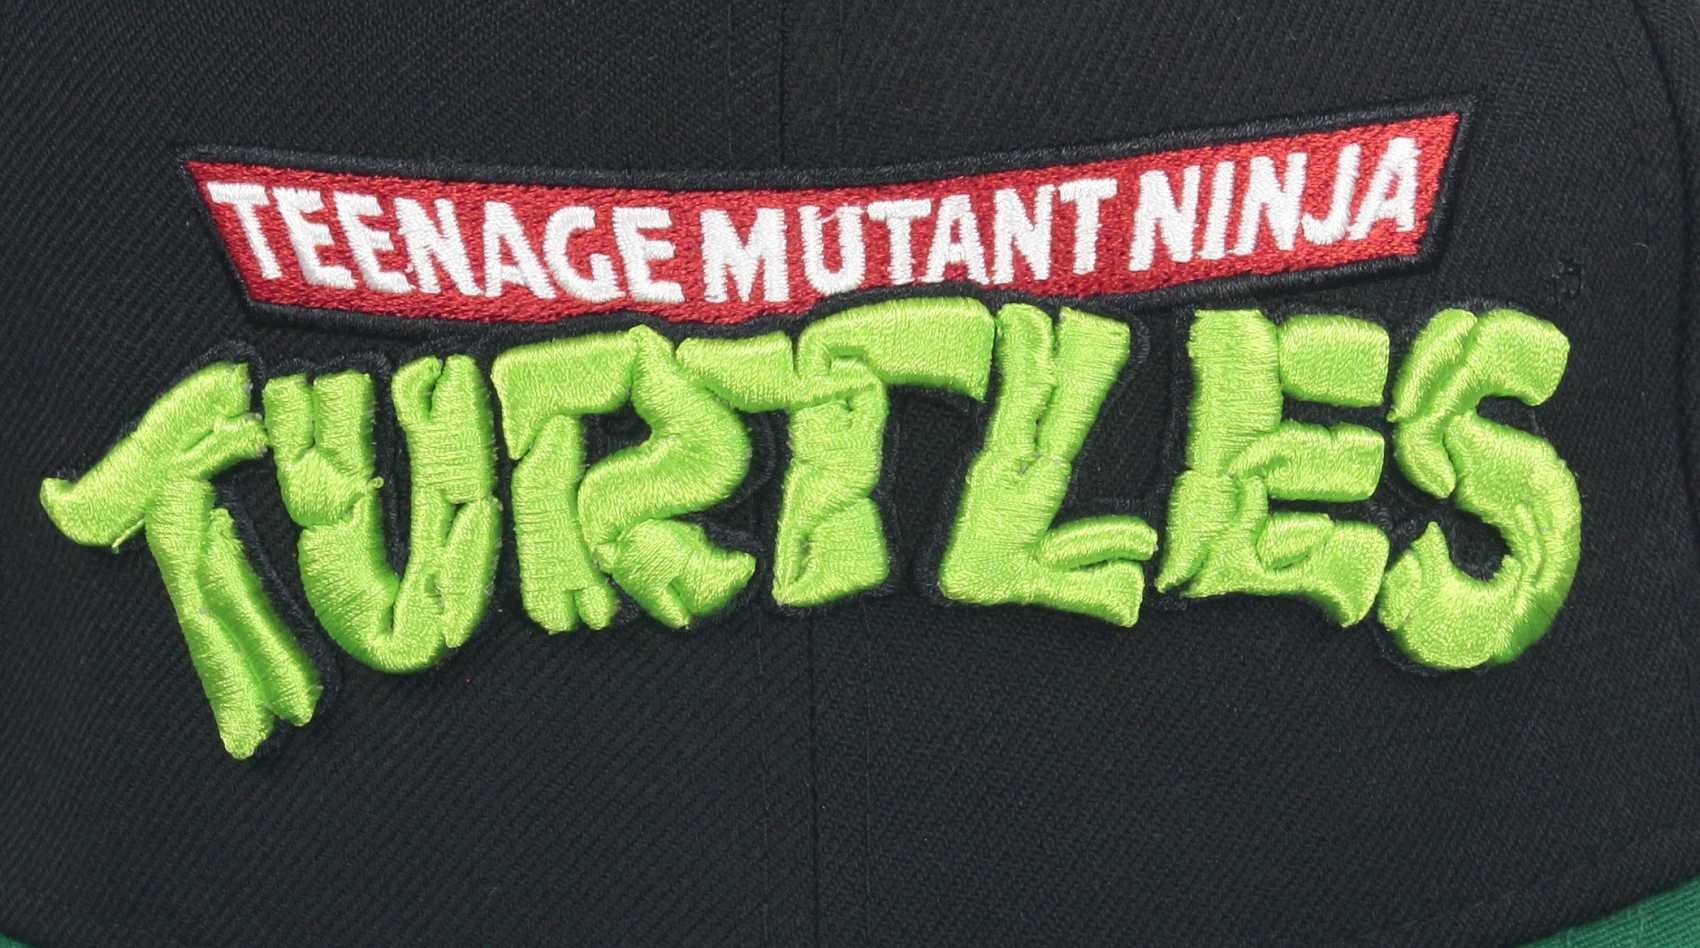 Teenage Mutant Ninja Turtles Black TMNT Edition 9Fifty Snapback Cap New Era  